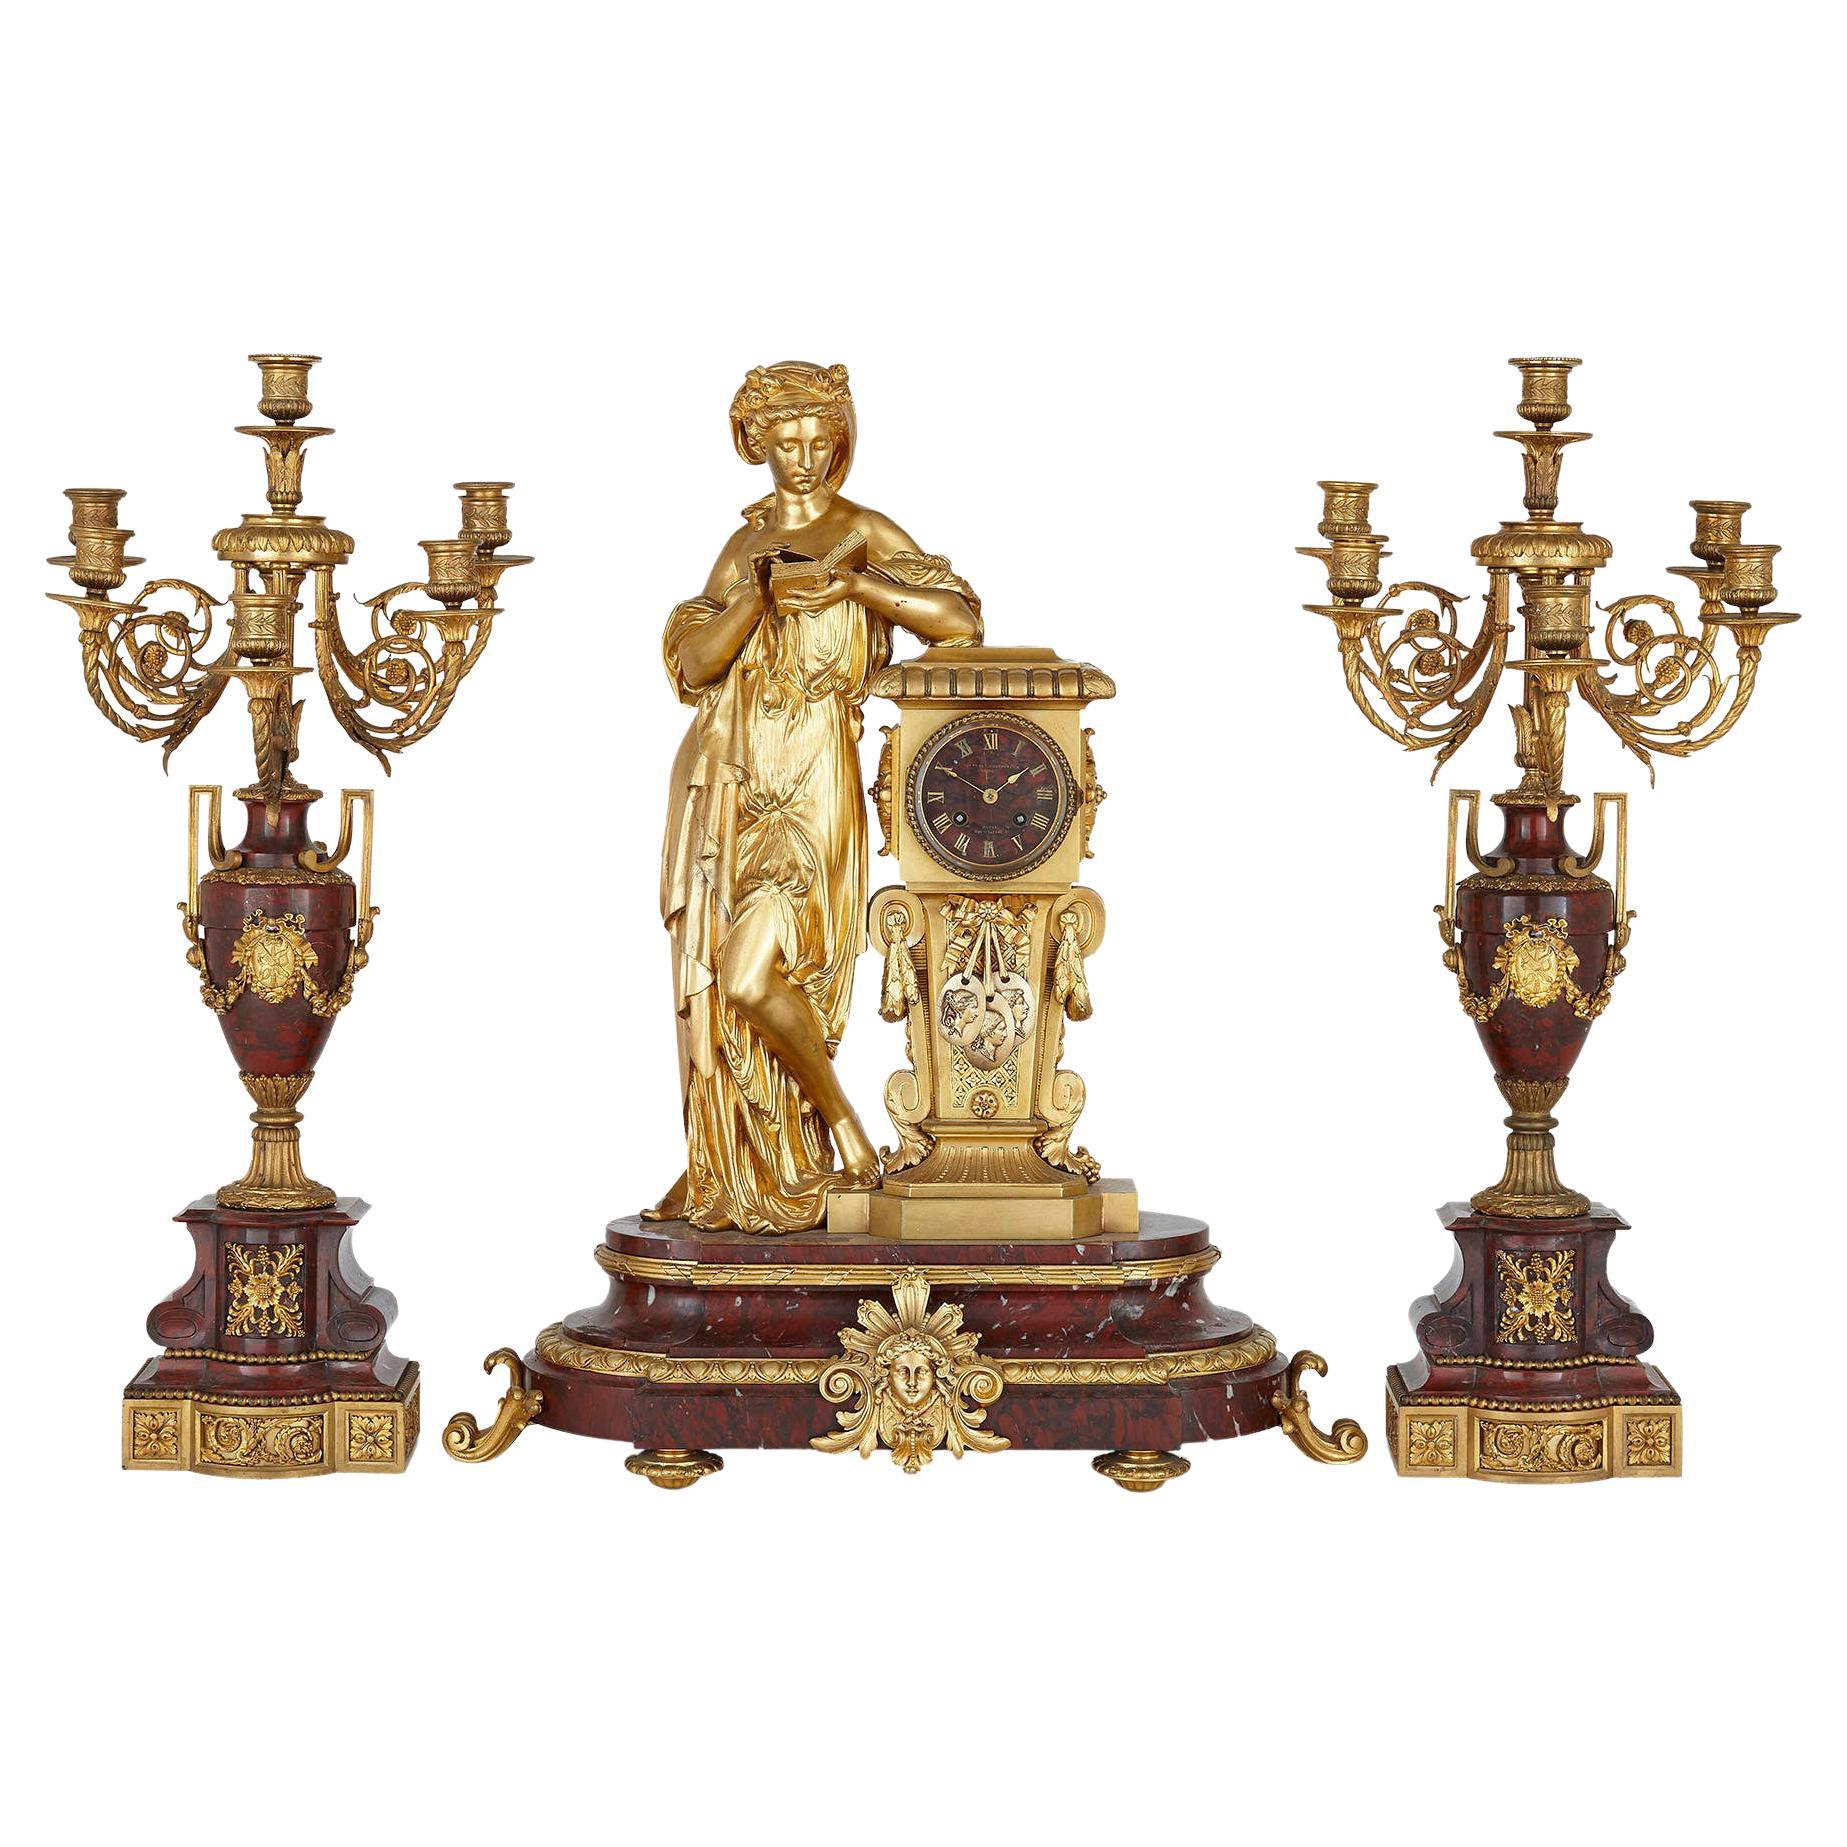 Ensemble d'horloges et de pendules assorties de style néoclassique français en marbre rouge et bronze doré